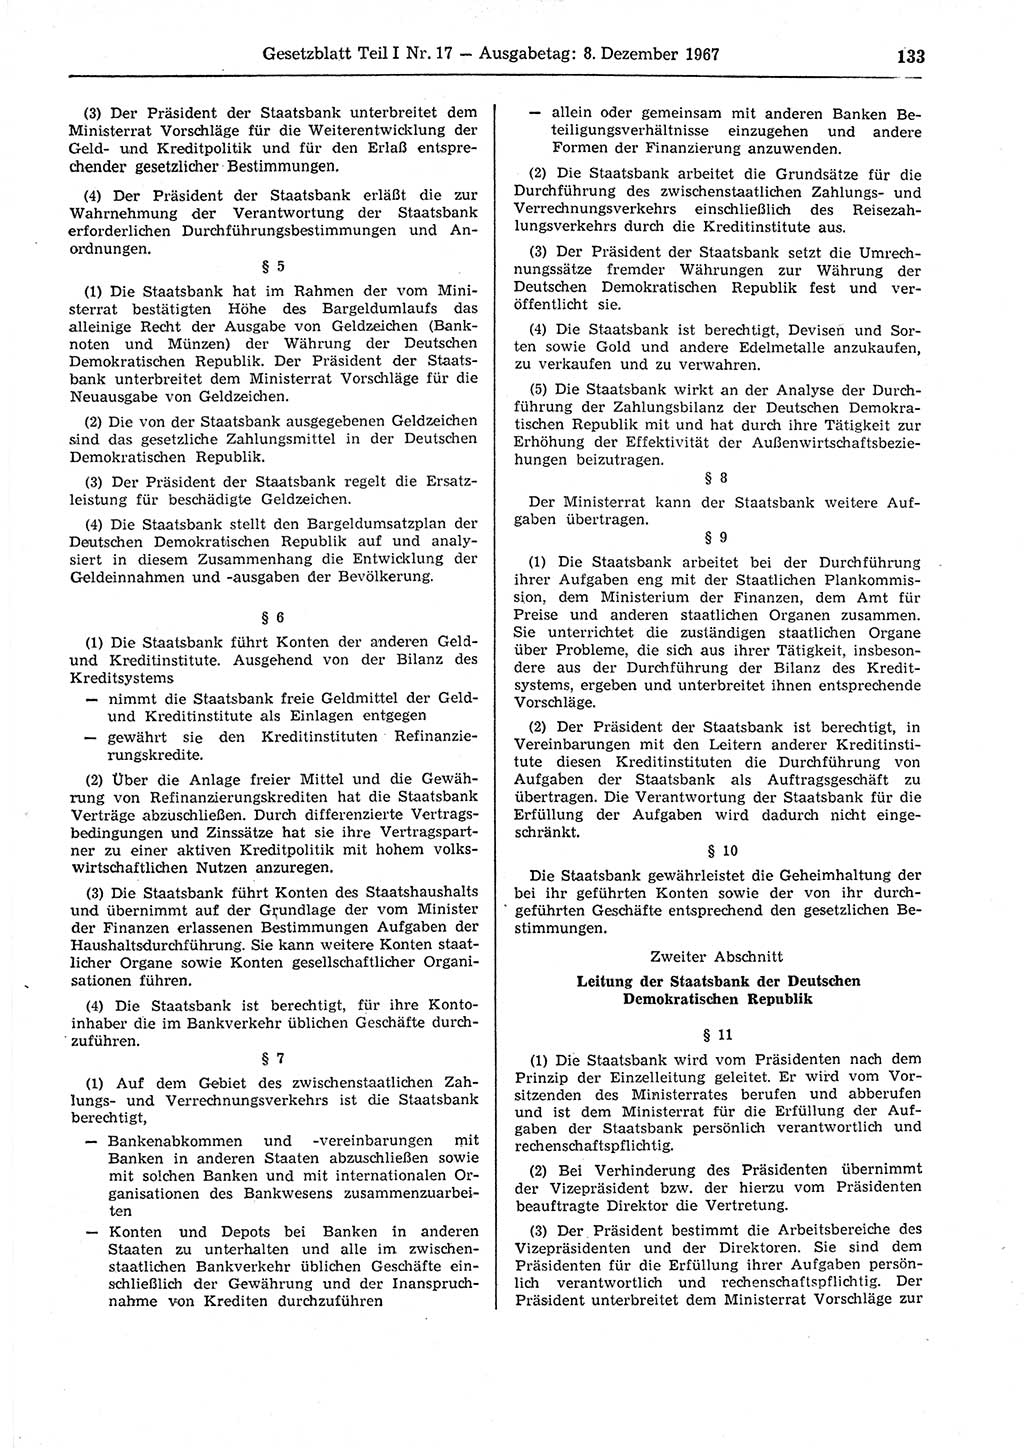 Gesetzblatt (GBl.) der Deutschen Demokratischen Republik (DDR) Teil Ⅰ 1967, Seite 133 (GBl. DDR Ⅰ 1967, S. 133)